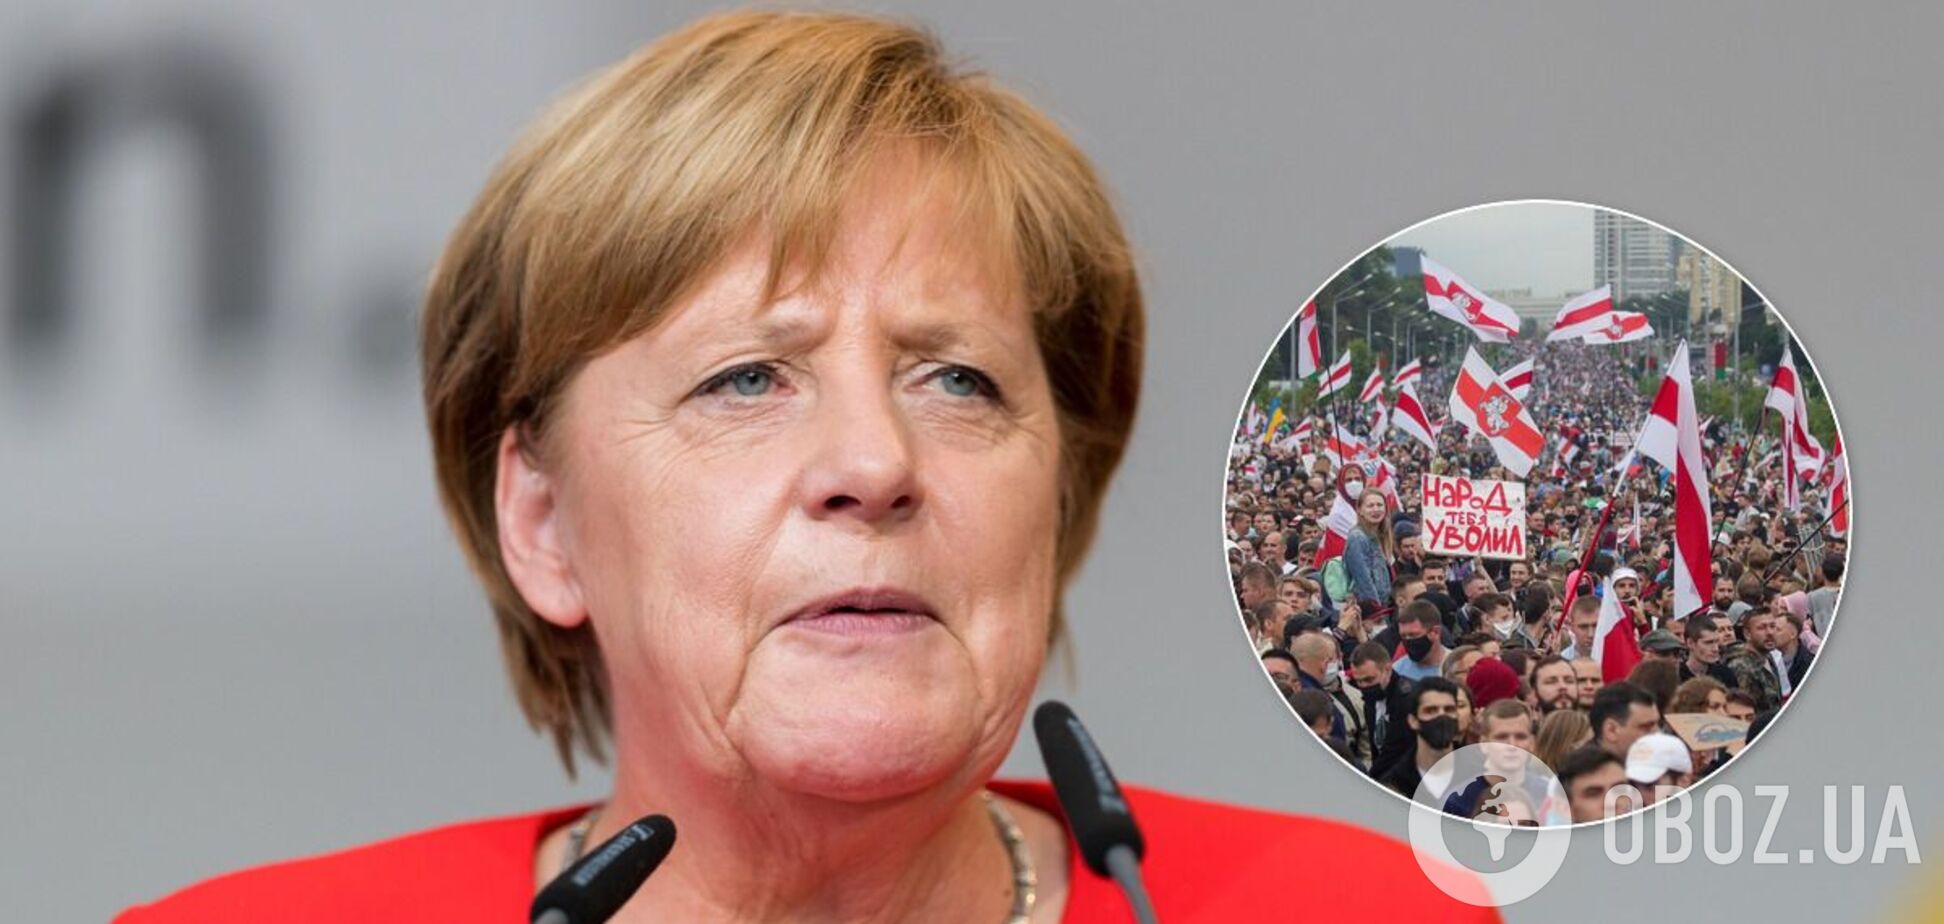 Меркель – про протести проти Лукашенка: прагнення до демократії розтоптано ногами